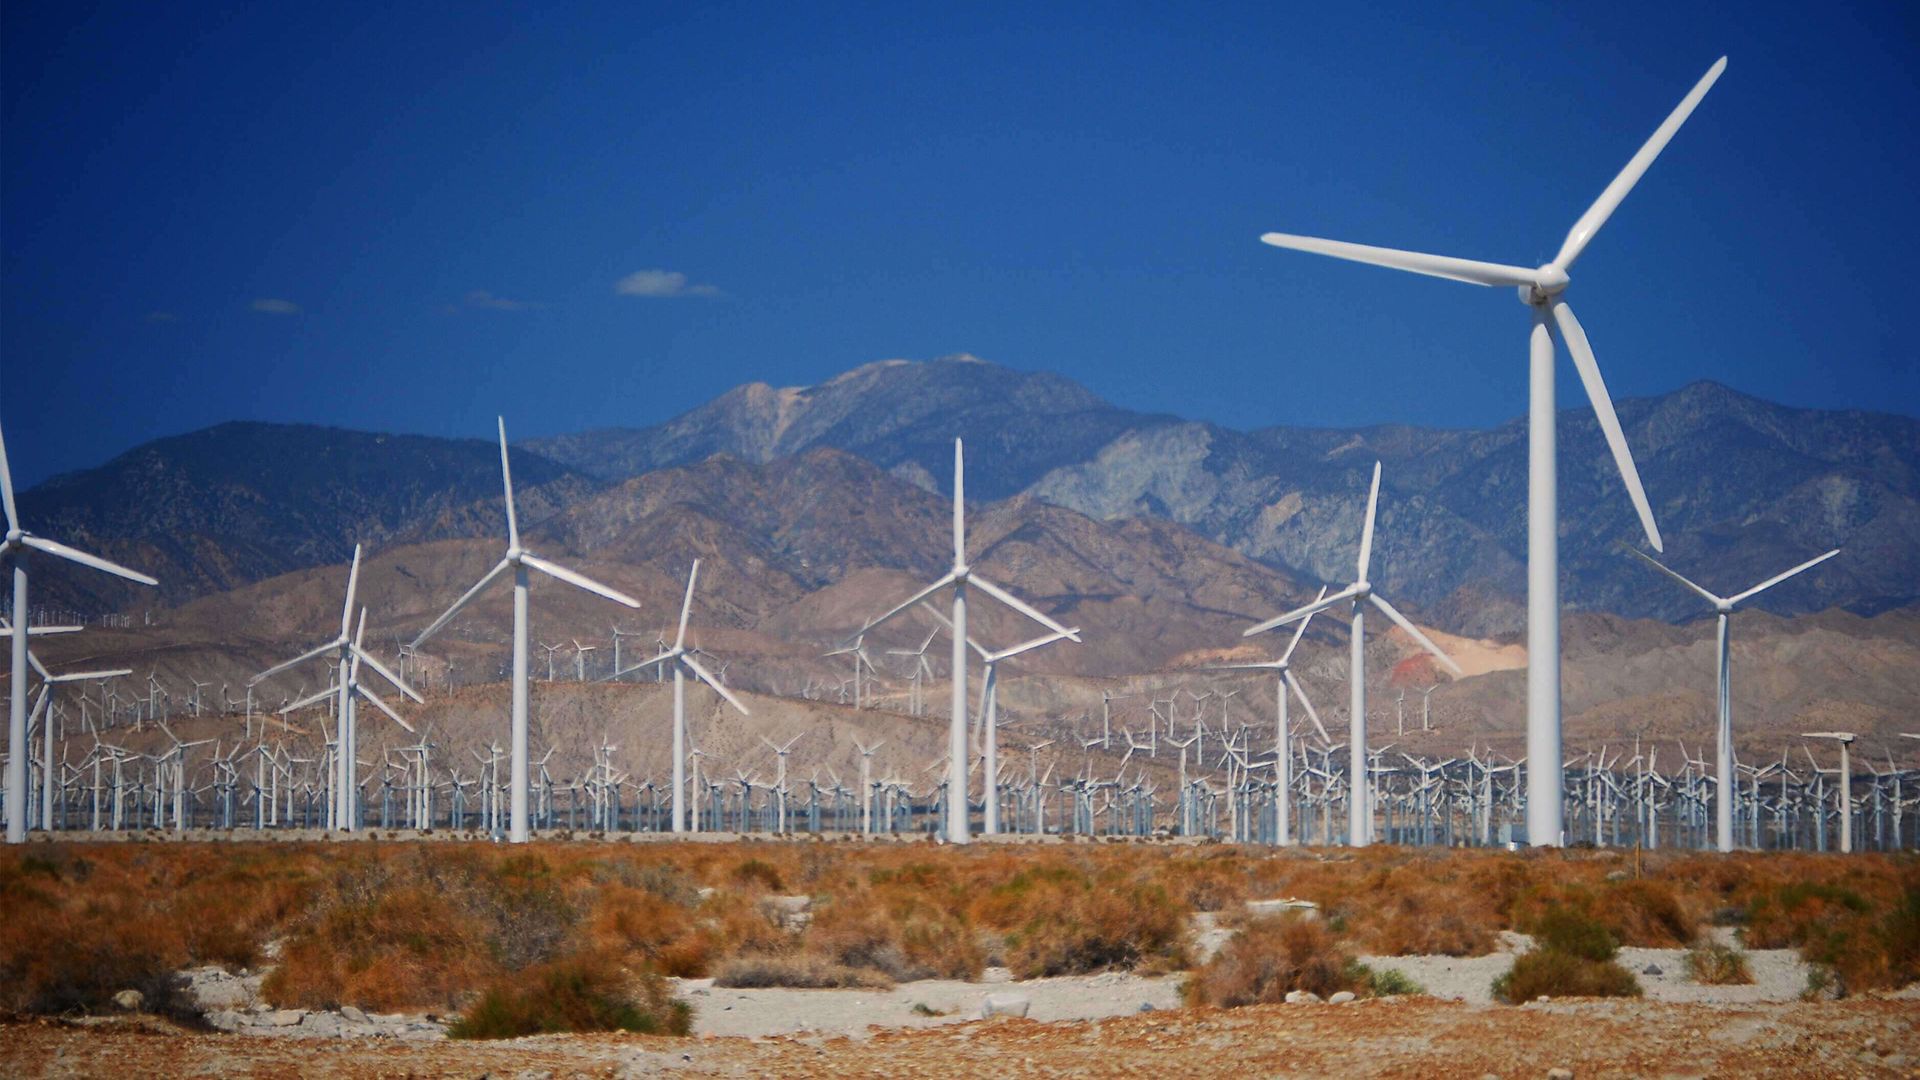 Massive wind turbine farm in California. Mountainous landscape.